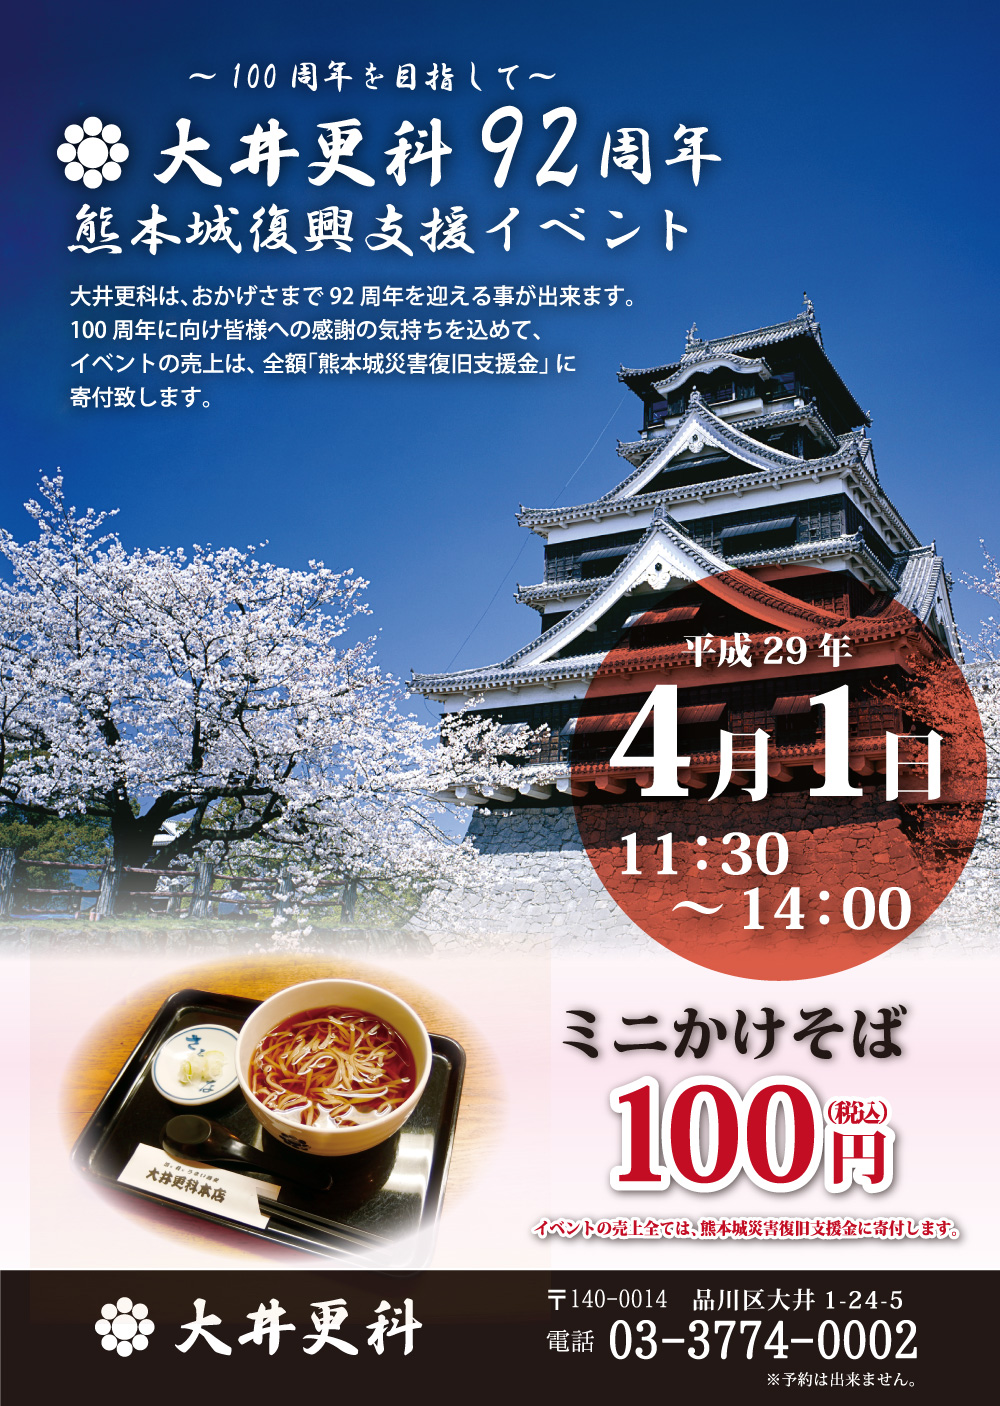 大井更科９２周年「熊本城復興支援イベント」開催のお知らせ